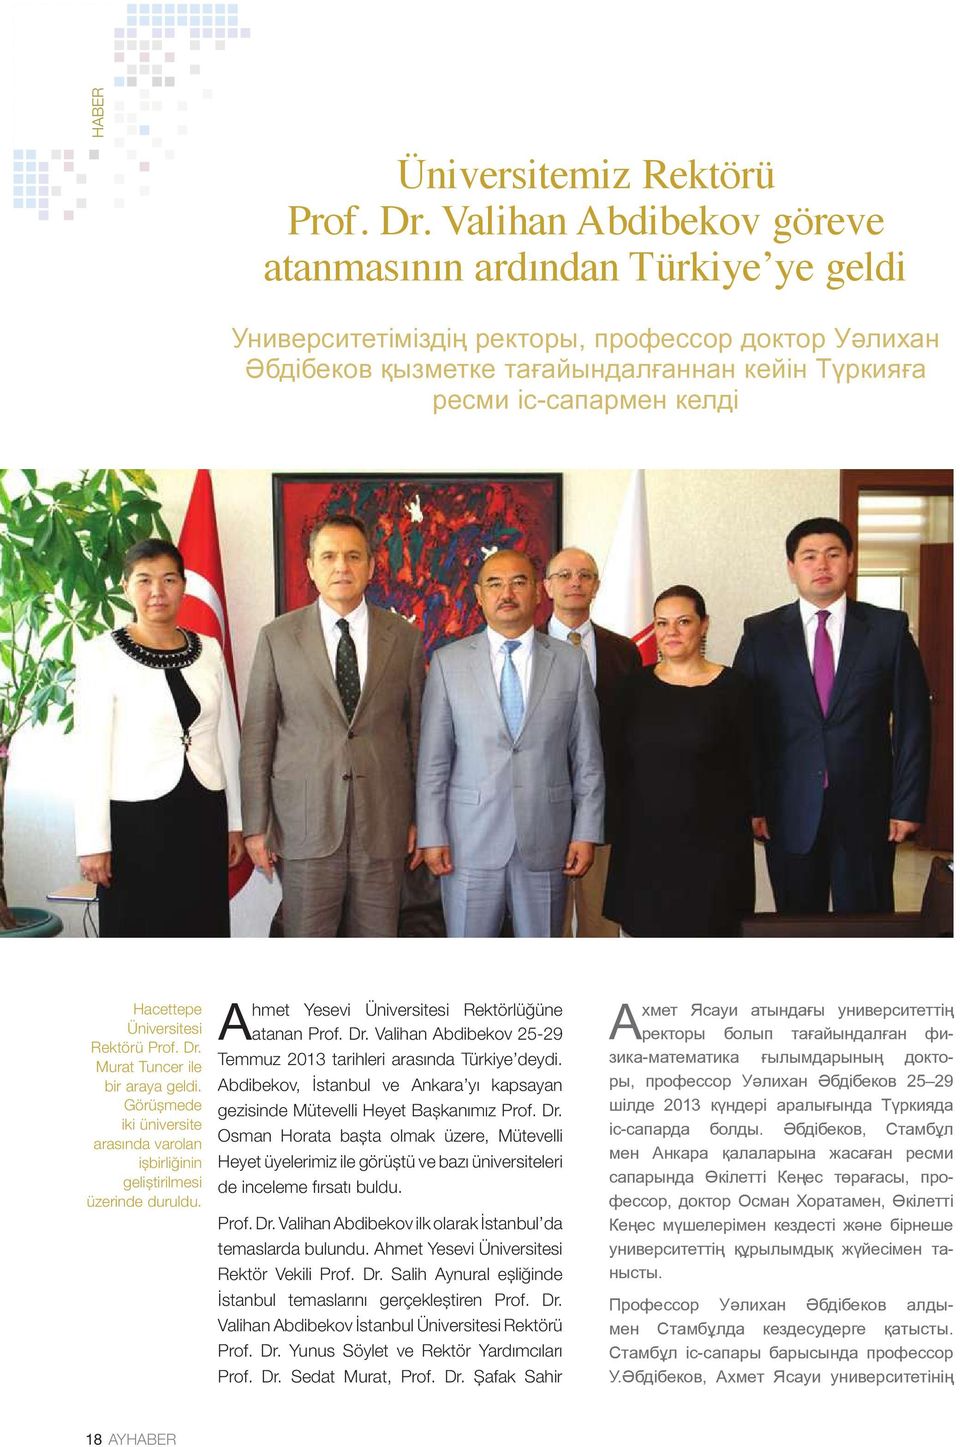 Hacettepe Üniversitesi Rektörü Prof. Dr. Murat Tuncer ile bir araya geldi. Görüşmede iki üniversite arasında varolan işbirliğinin geliştirilmesi üzerinde duruldu.